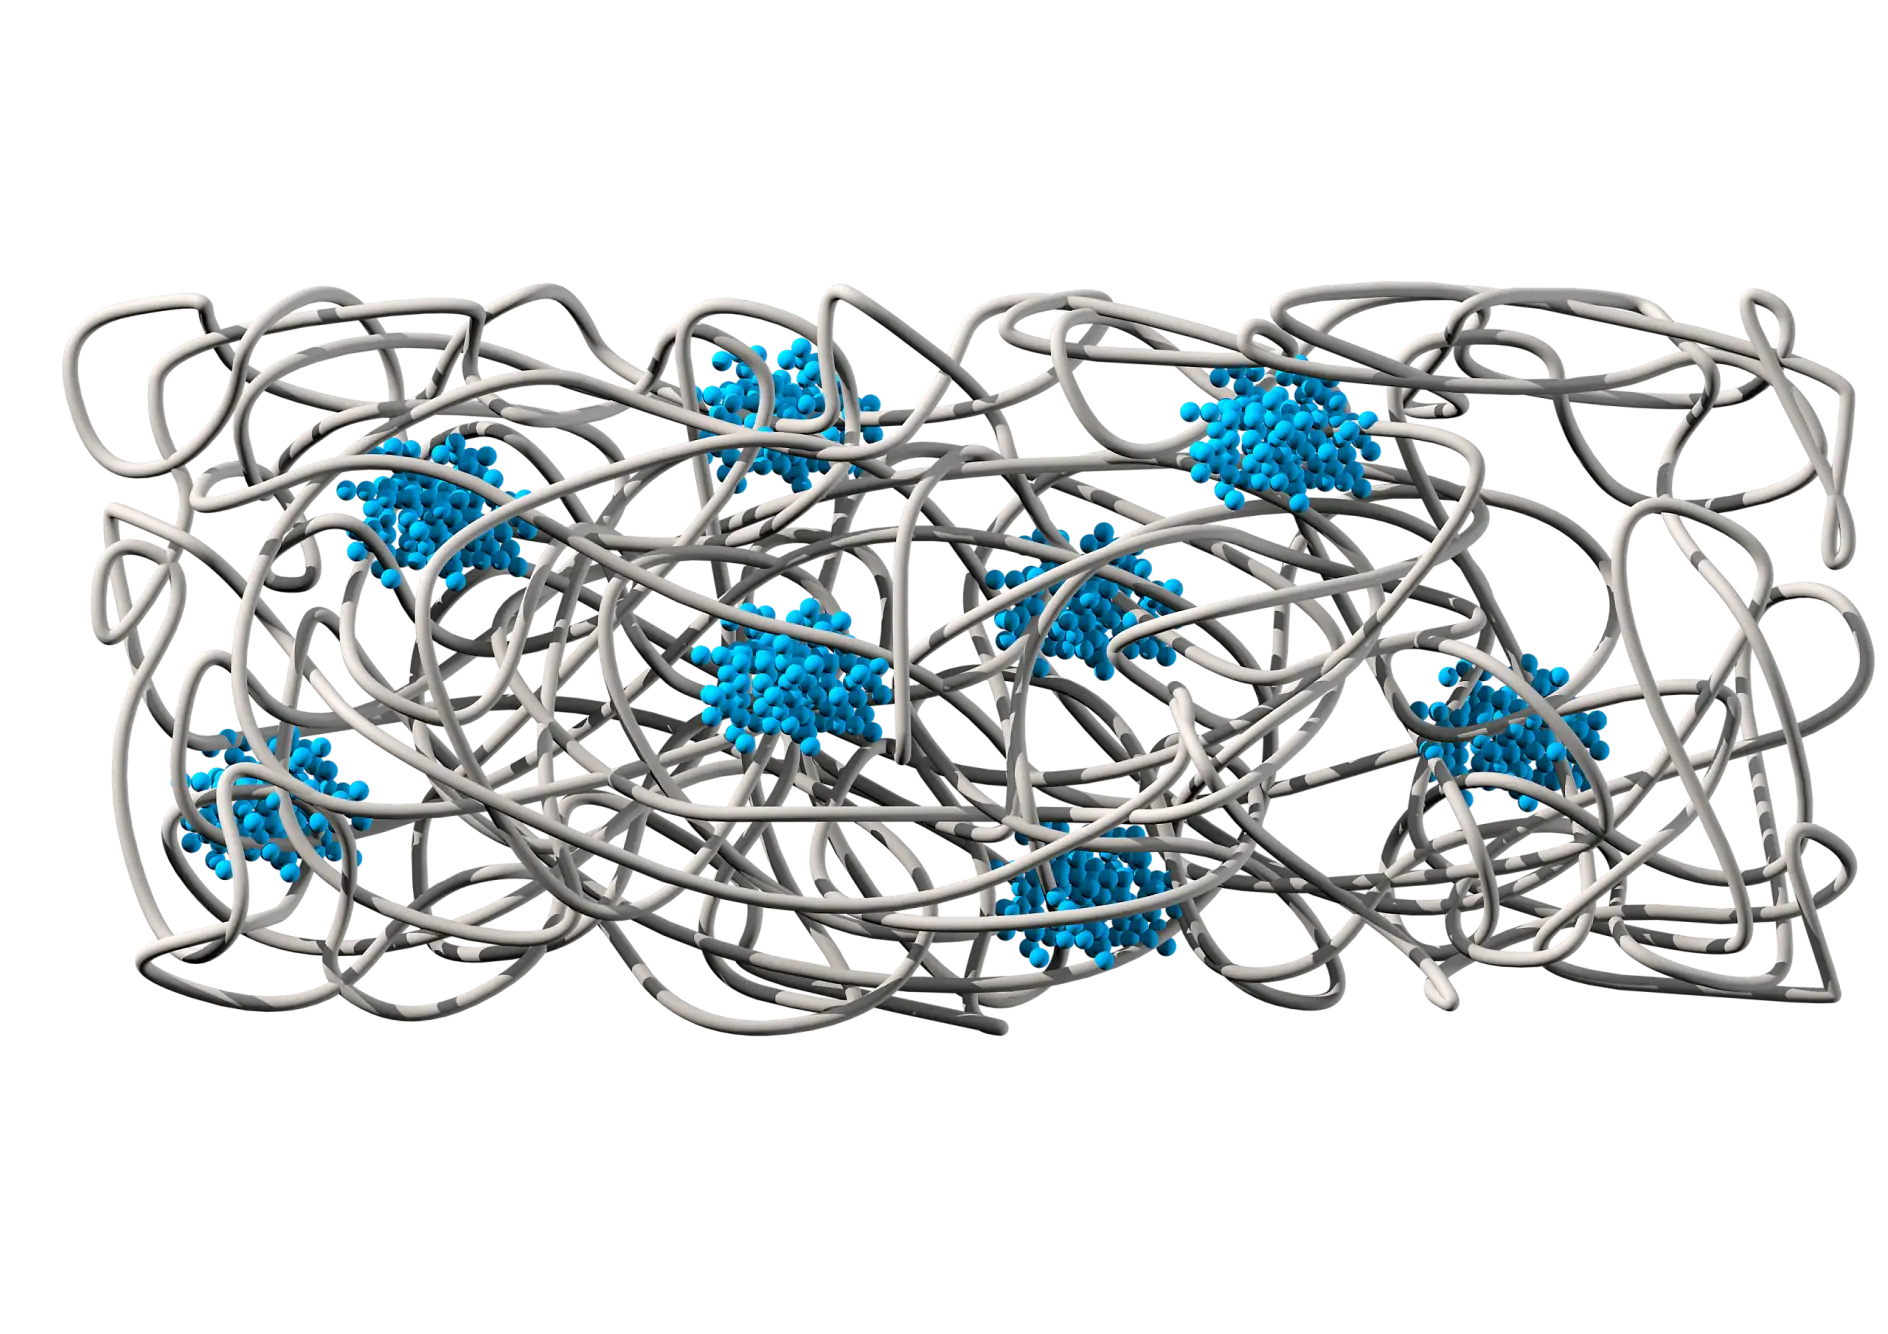 Chemická struktura ukazuje kaučukovou matrici (šedou barvou), která zajišťuje přilnavost a pružnost, a dále polystyrénové domény (modrou barvou) poskytující soudržnost a odolnost vůči přetržení.